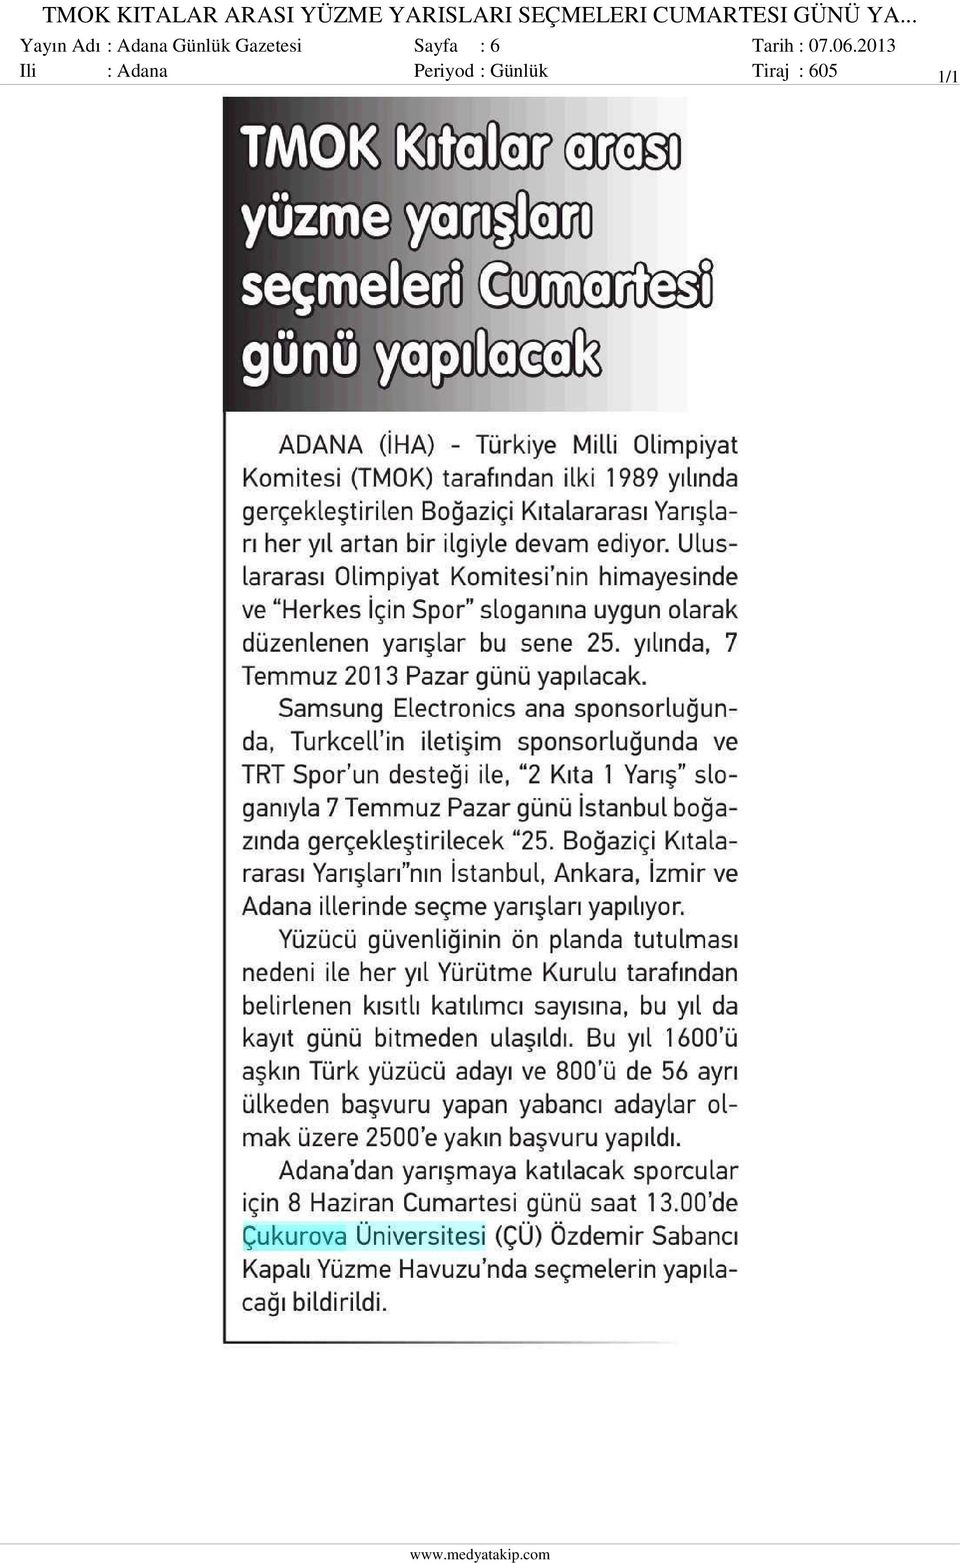 .. Yayın Adı : Adana Günlük Gazetesi